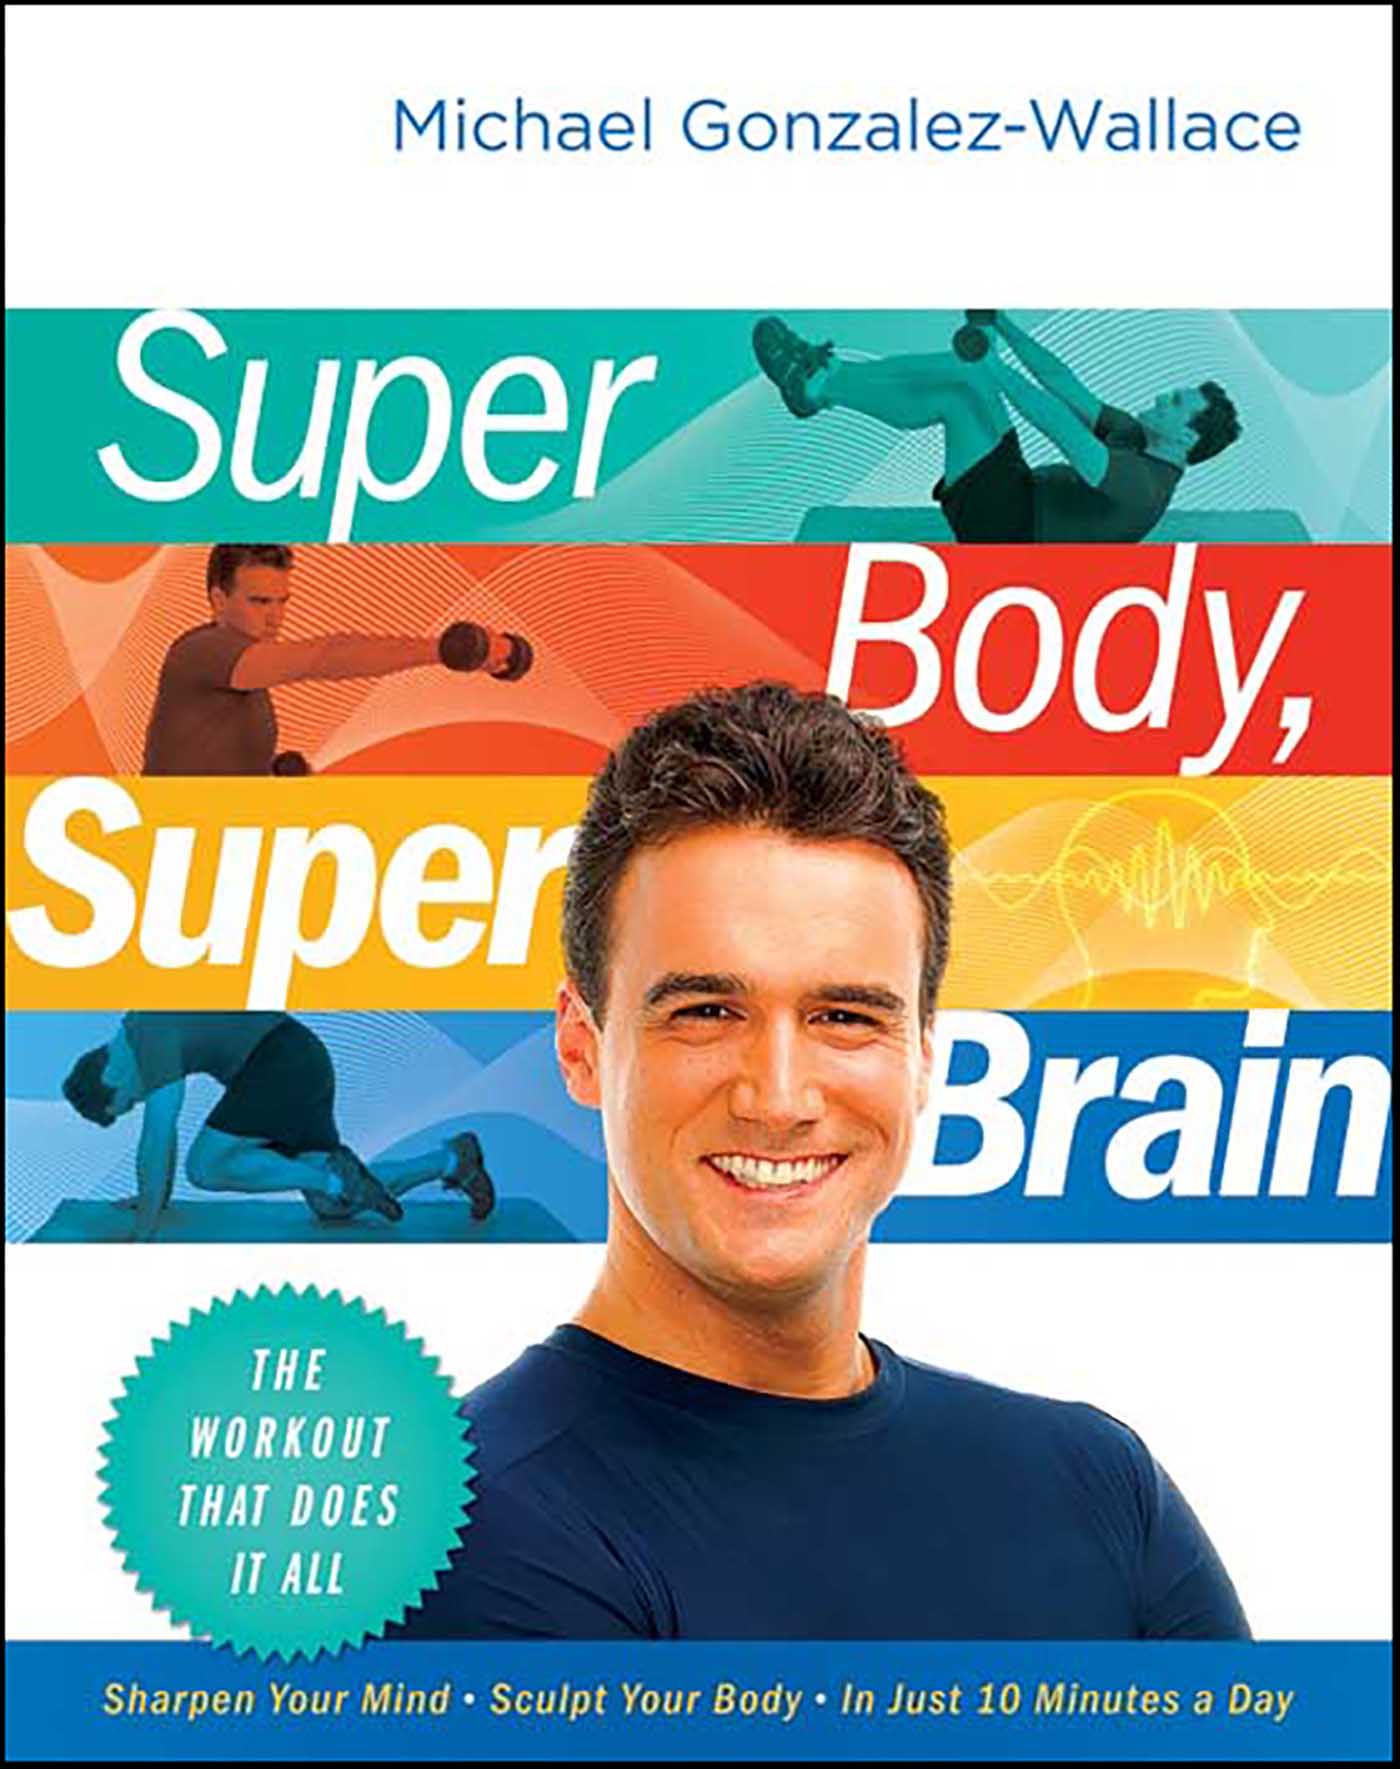 Super body, super brain cover image